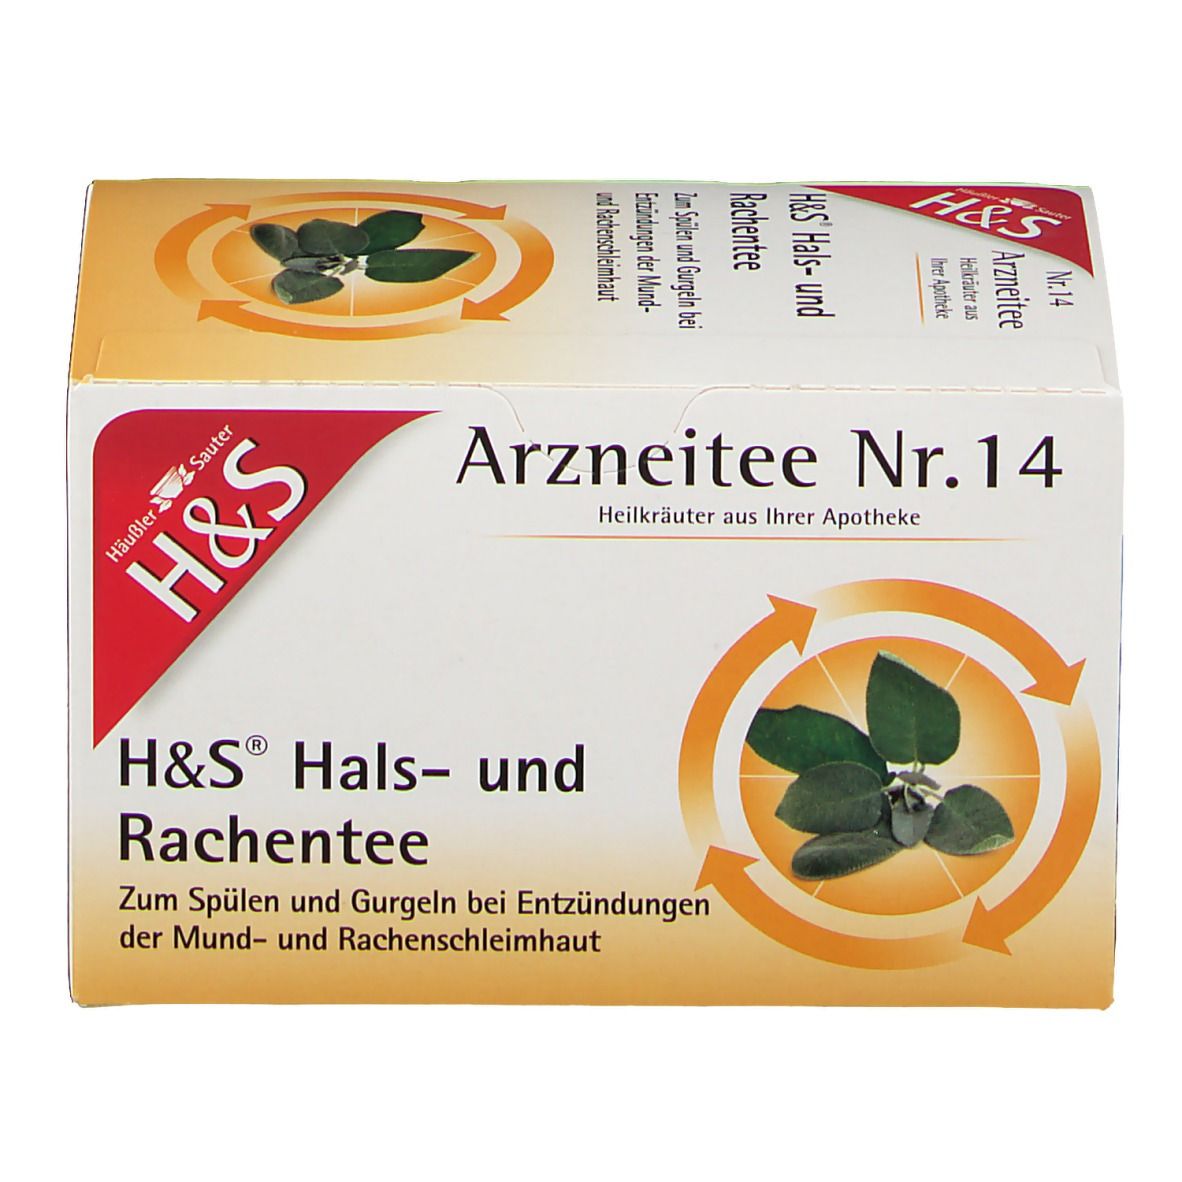 H&S Hals- und Rachentee Nr. 14